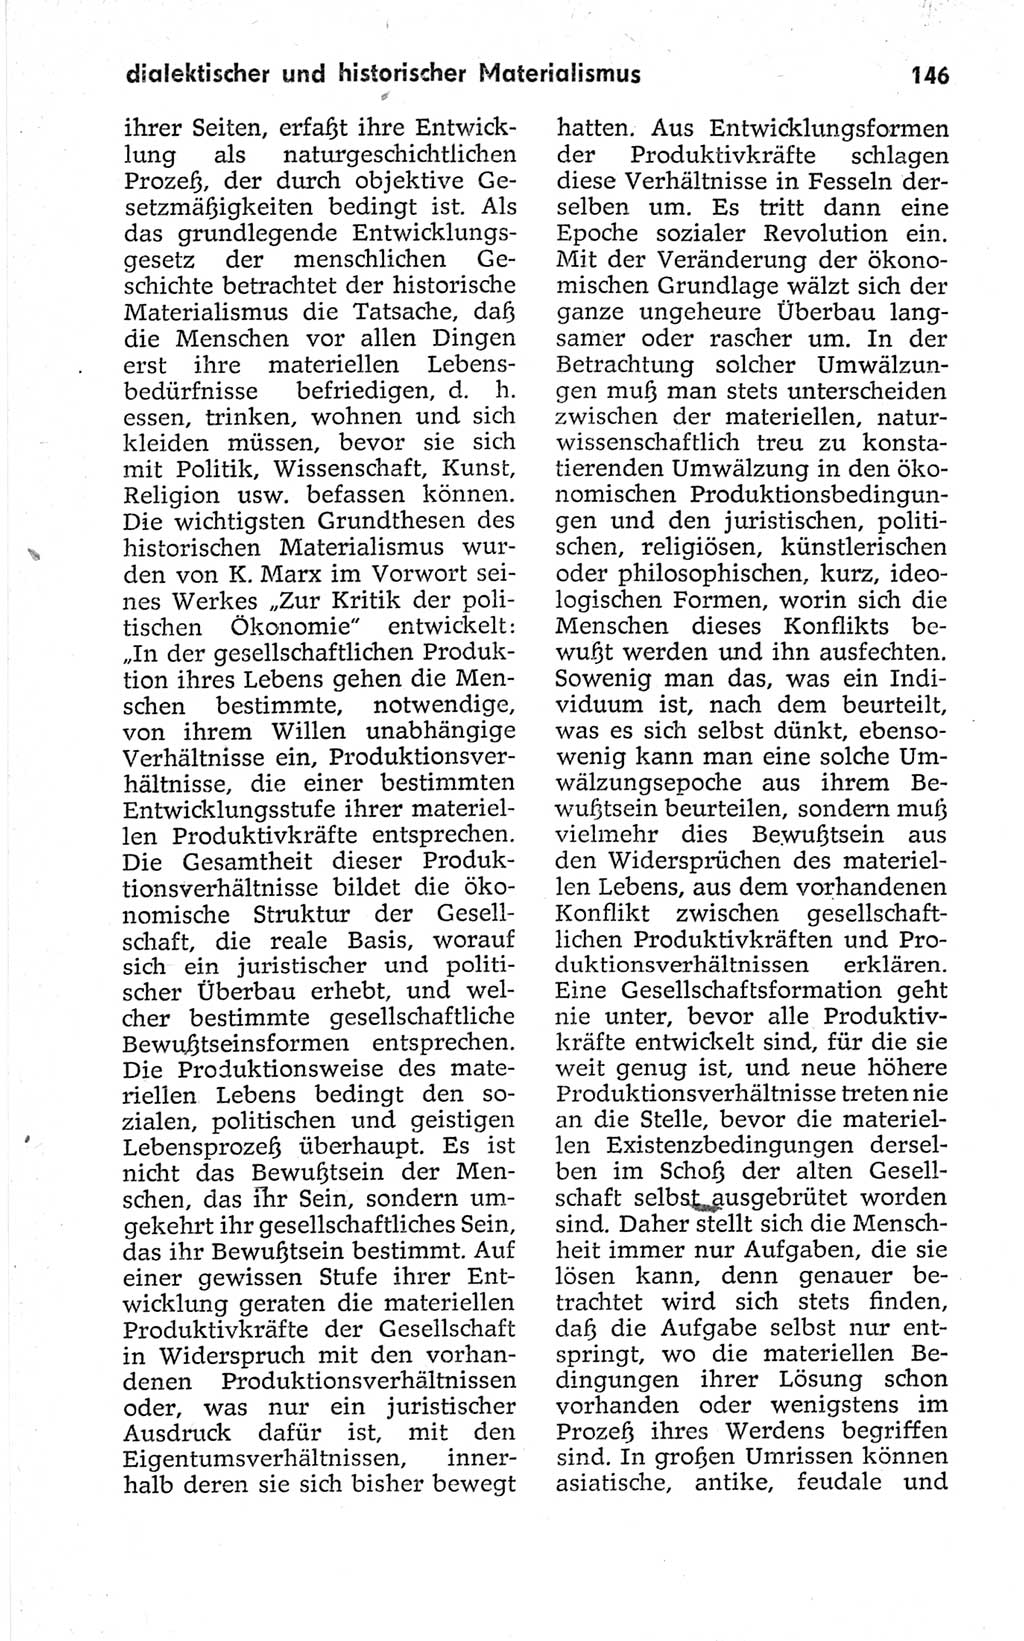 Kleines politisches Wörterbuch [Deutsche Demokratische Republik (DDR)] 1967, Seite 146 (Kl. pol. Wb. DDR 1967, S. 146)